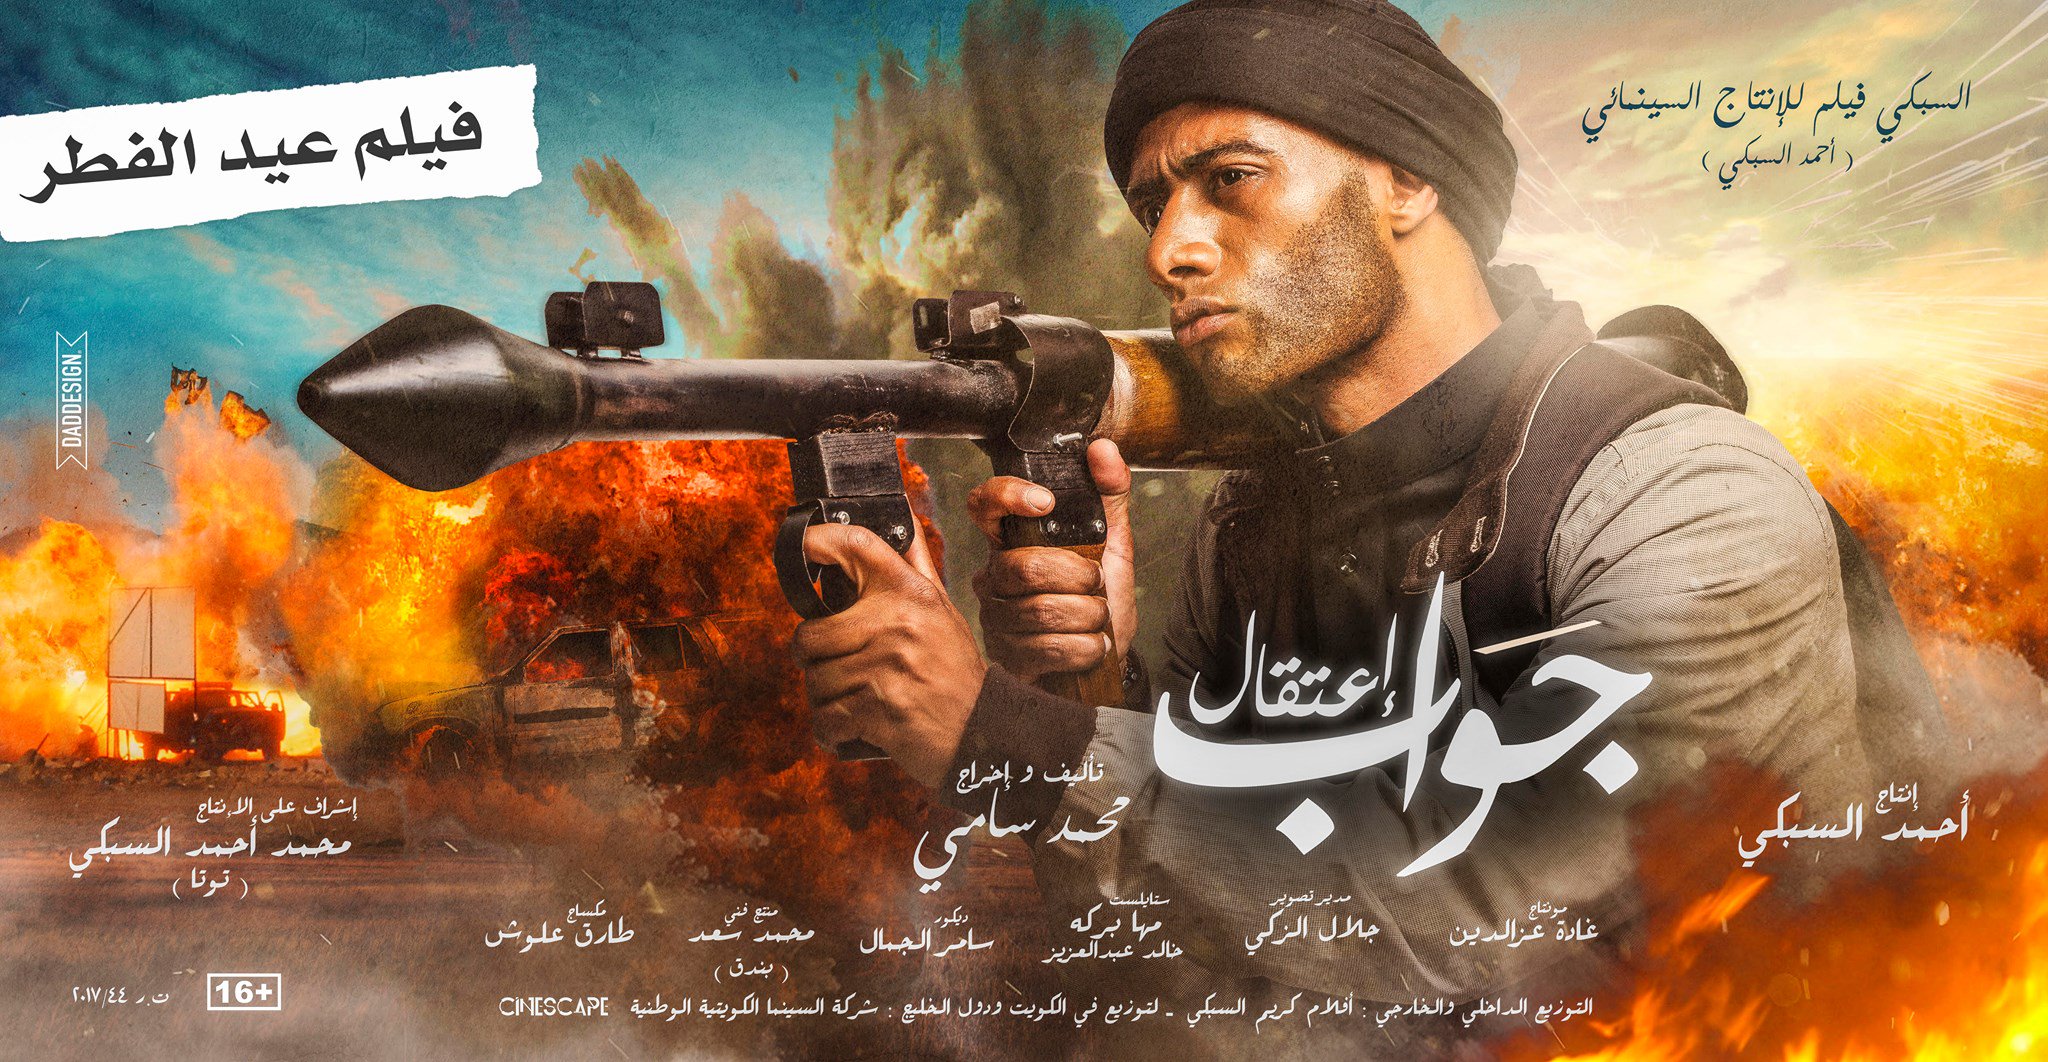 بالفيديو: شاروخان يضع محمد رمضان في ورطة قبل عرض جواب اعتقال!   مجلة سيدتي